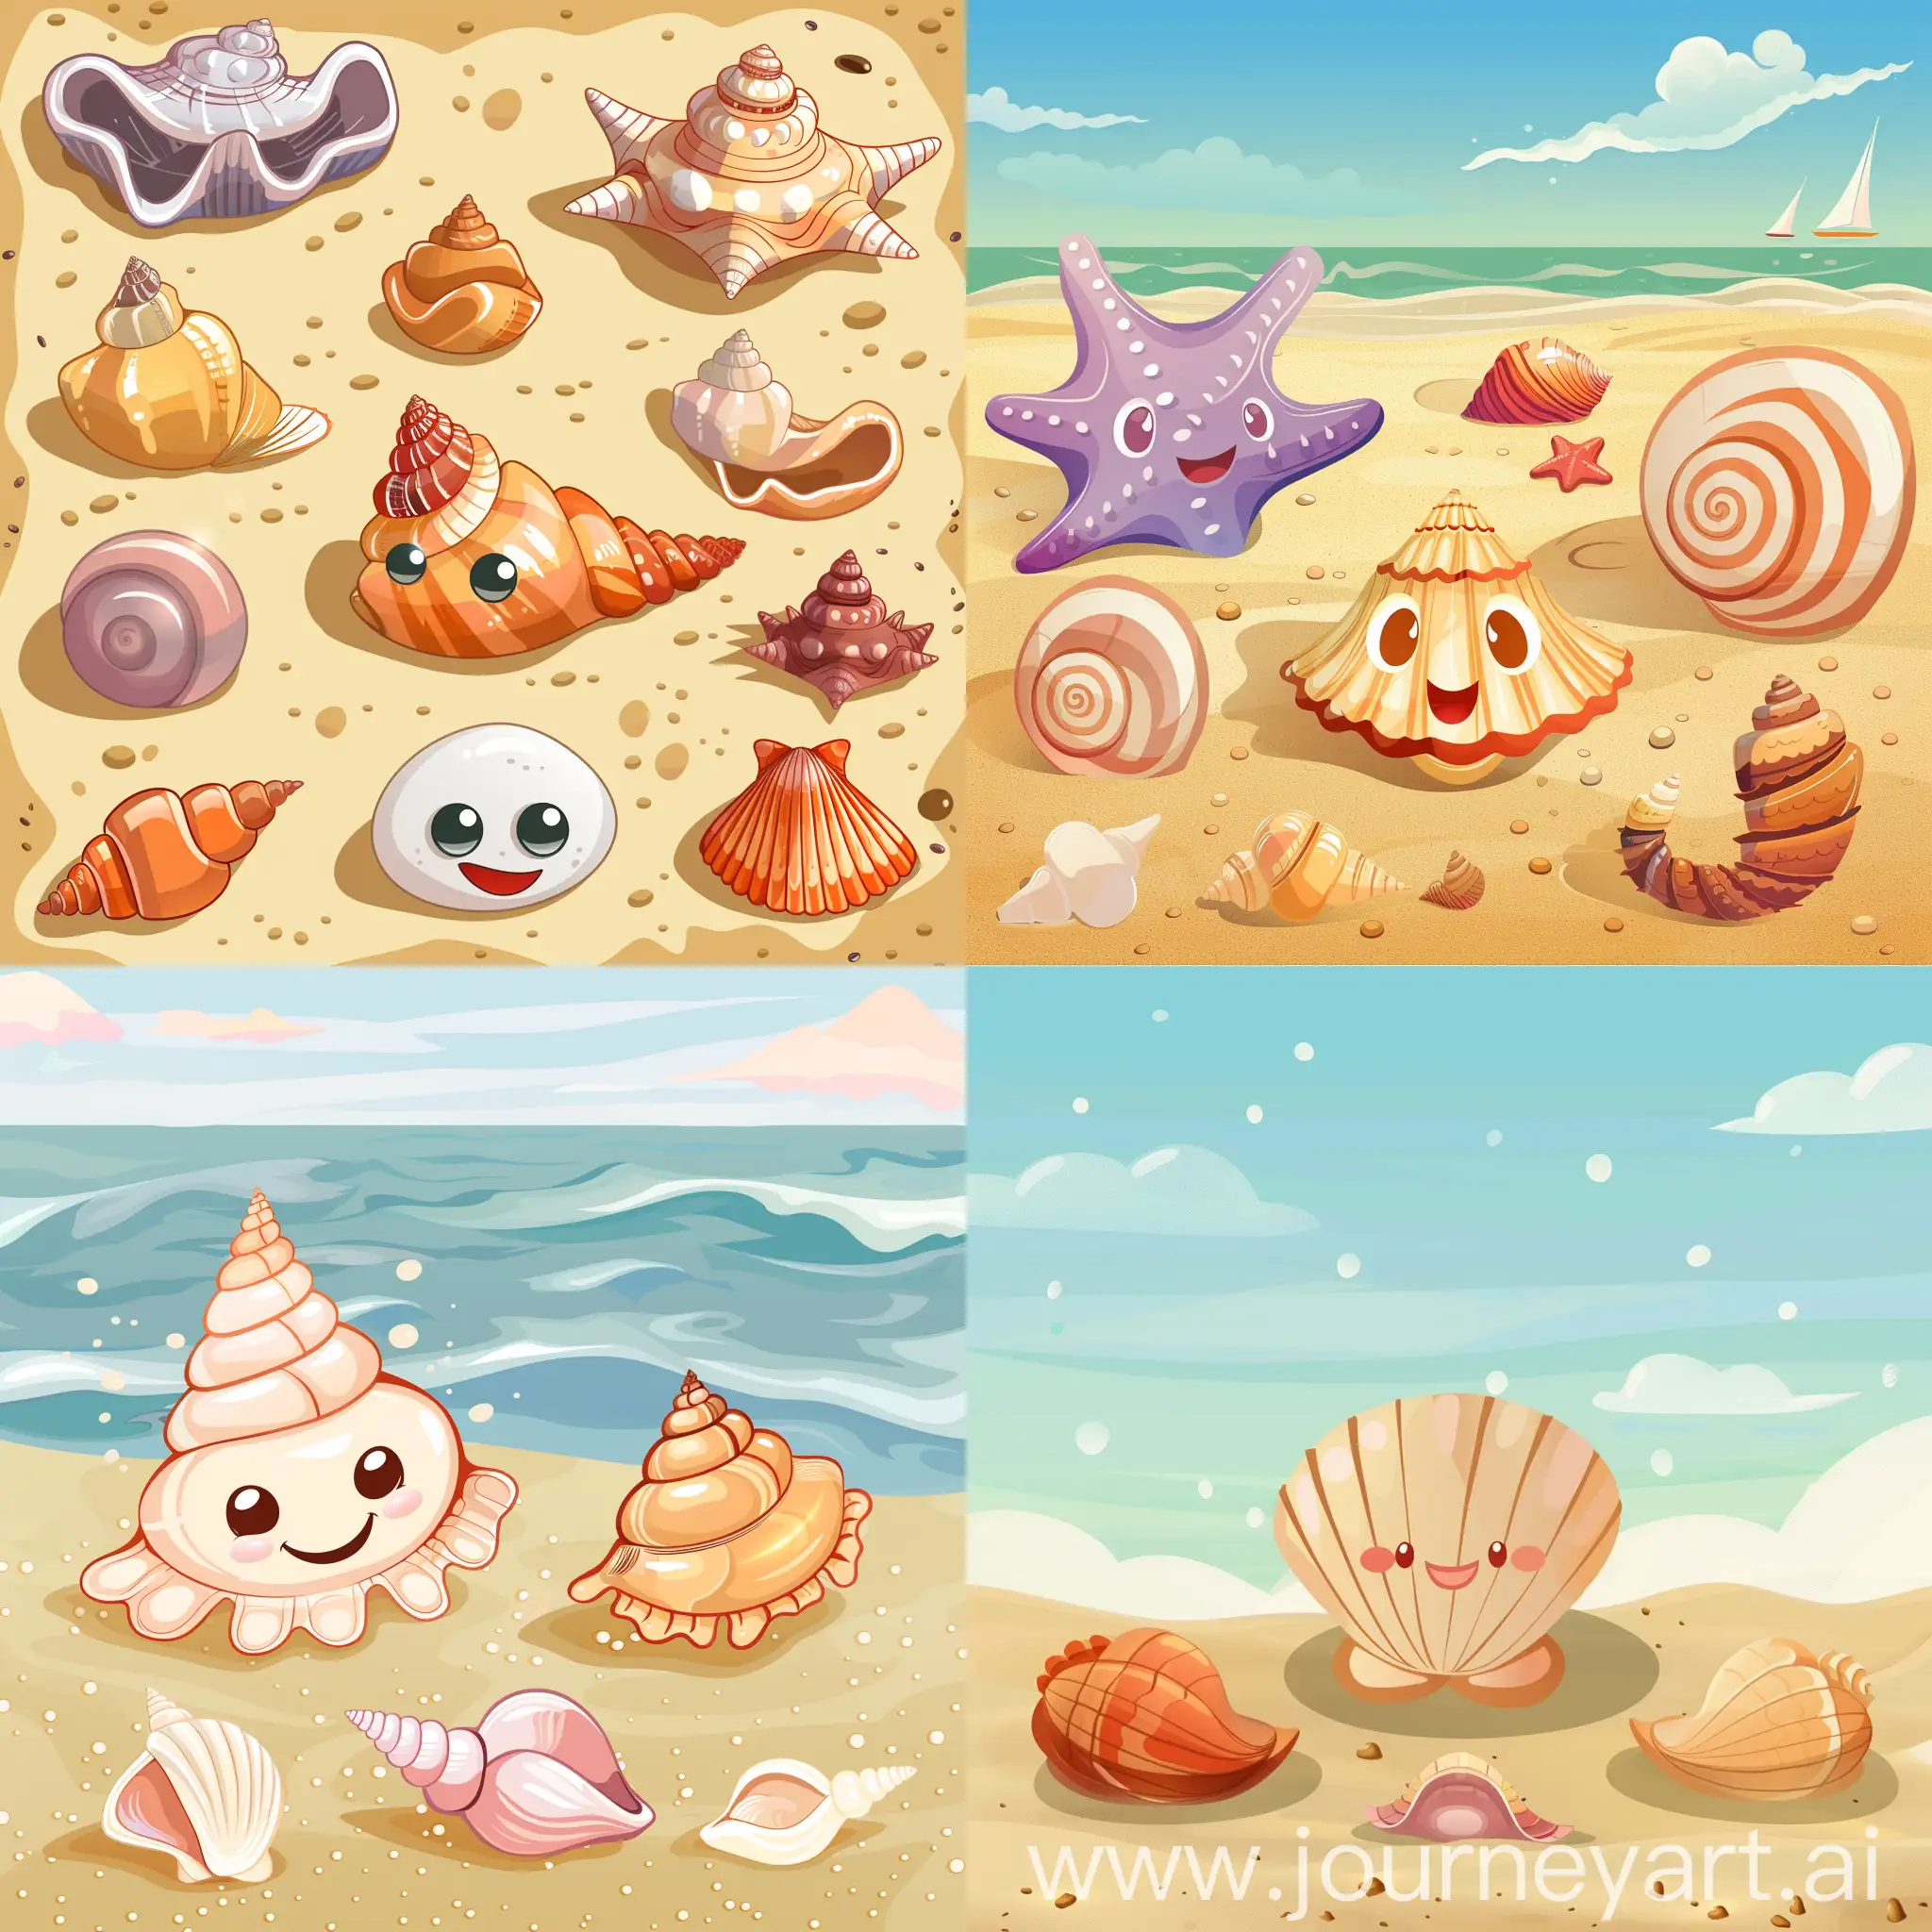 seashells as cartoon character on sand beach vector